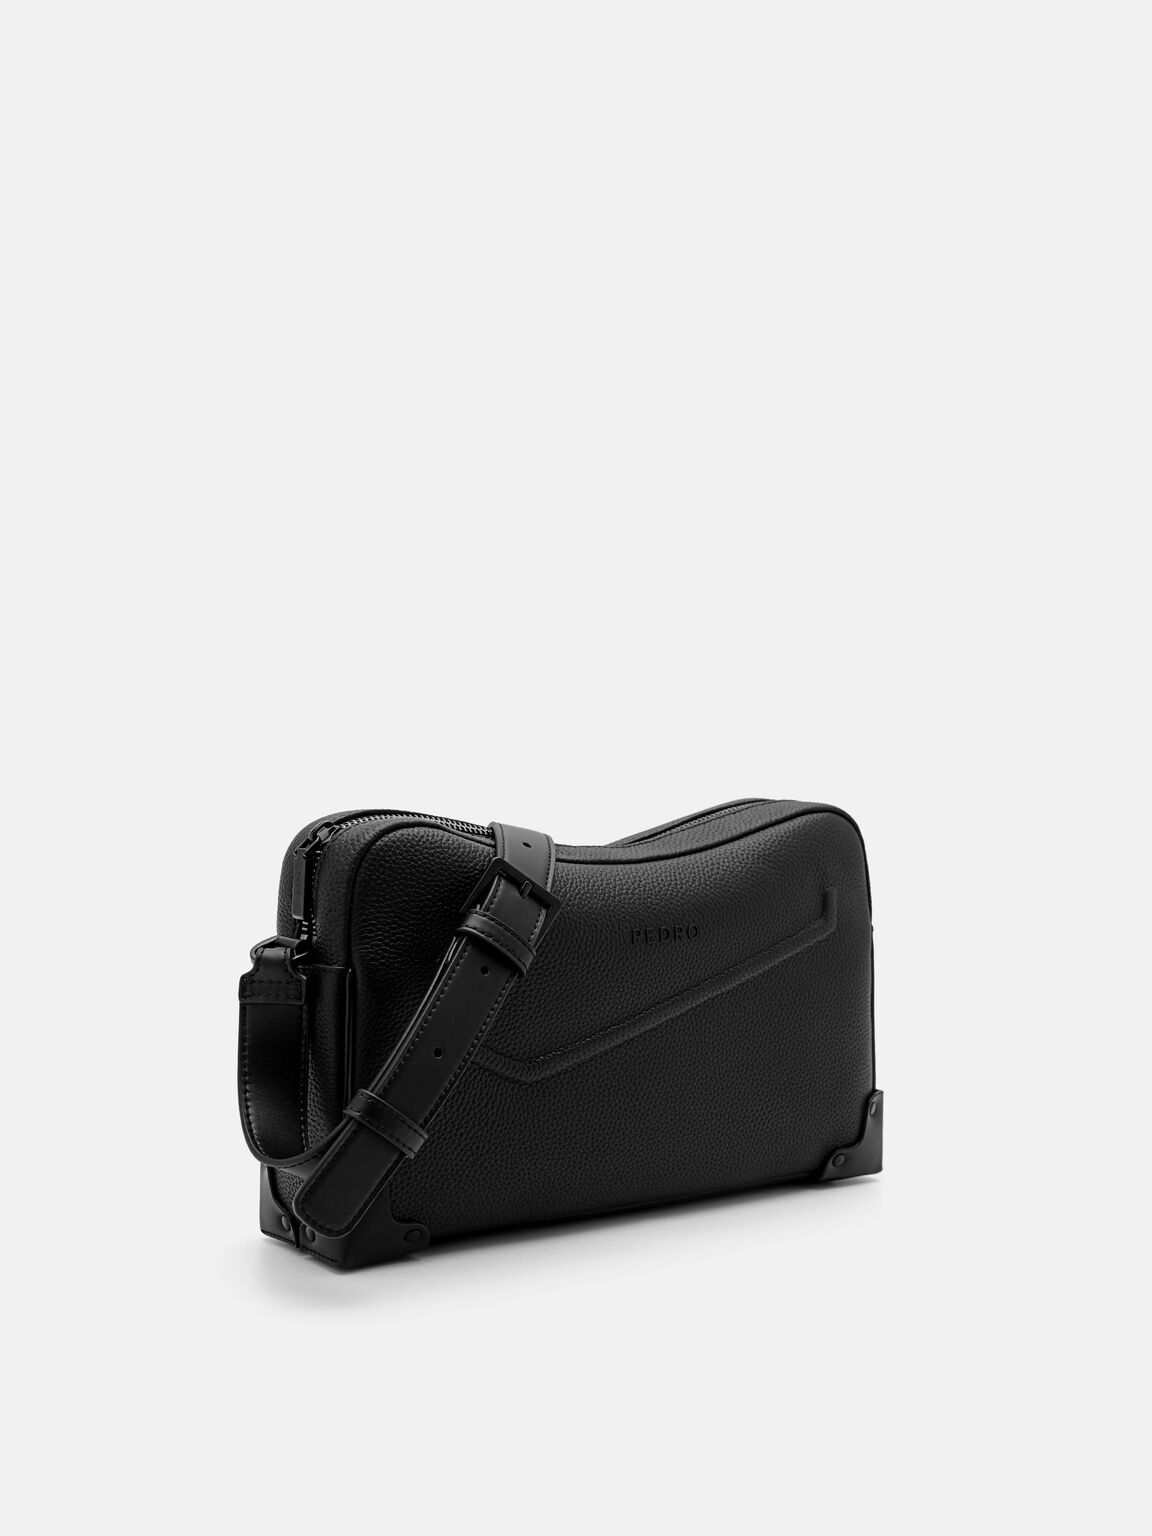 Túi đeo chéo hình chữ nhật Taper Leather, Đen, hi-res